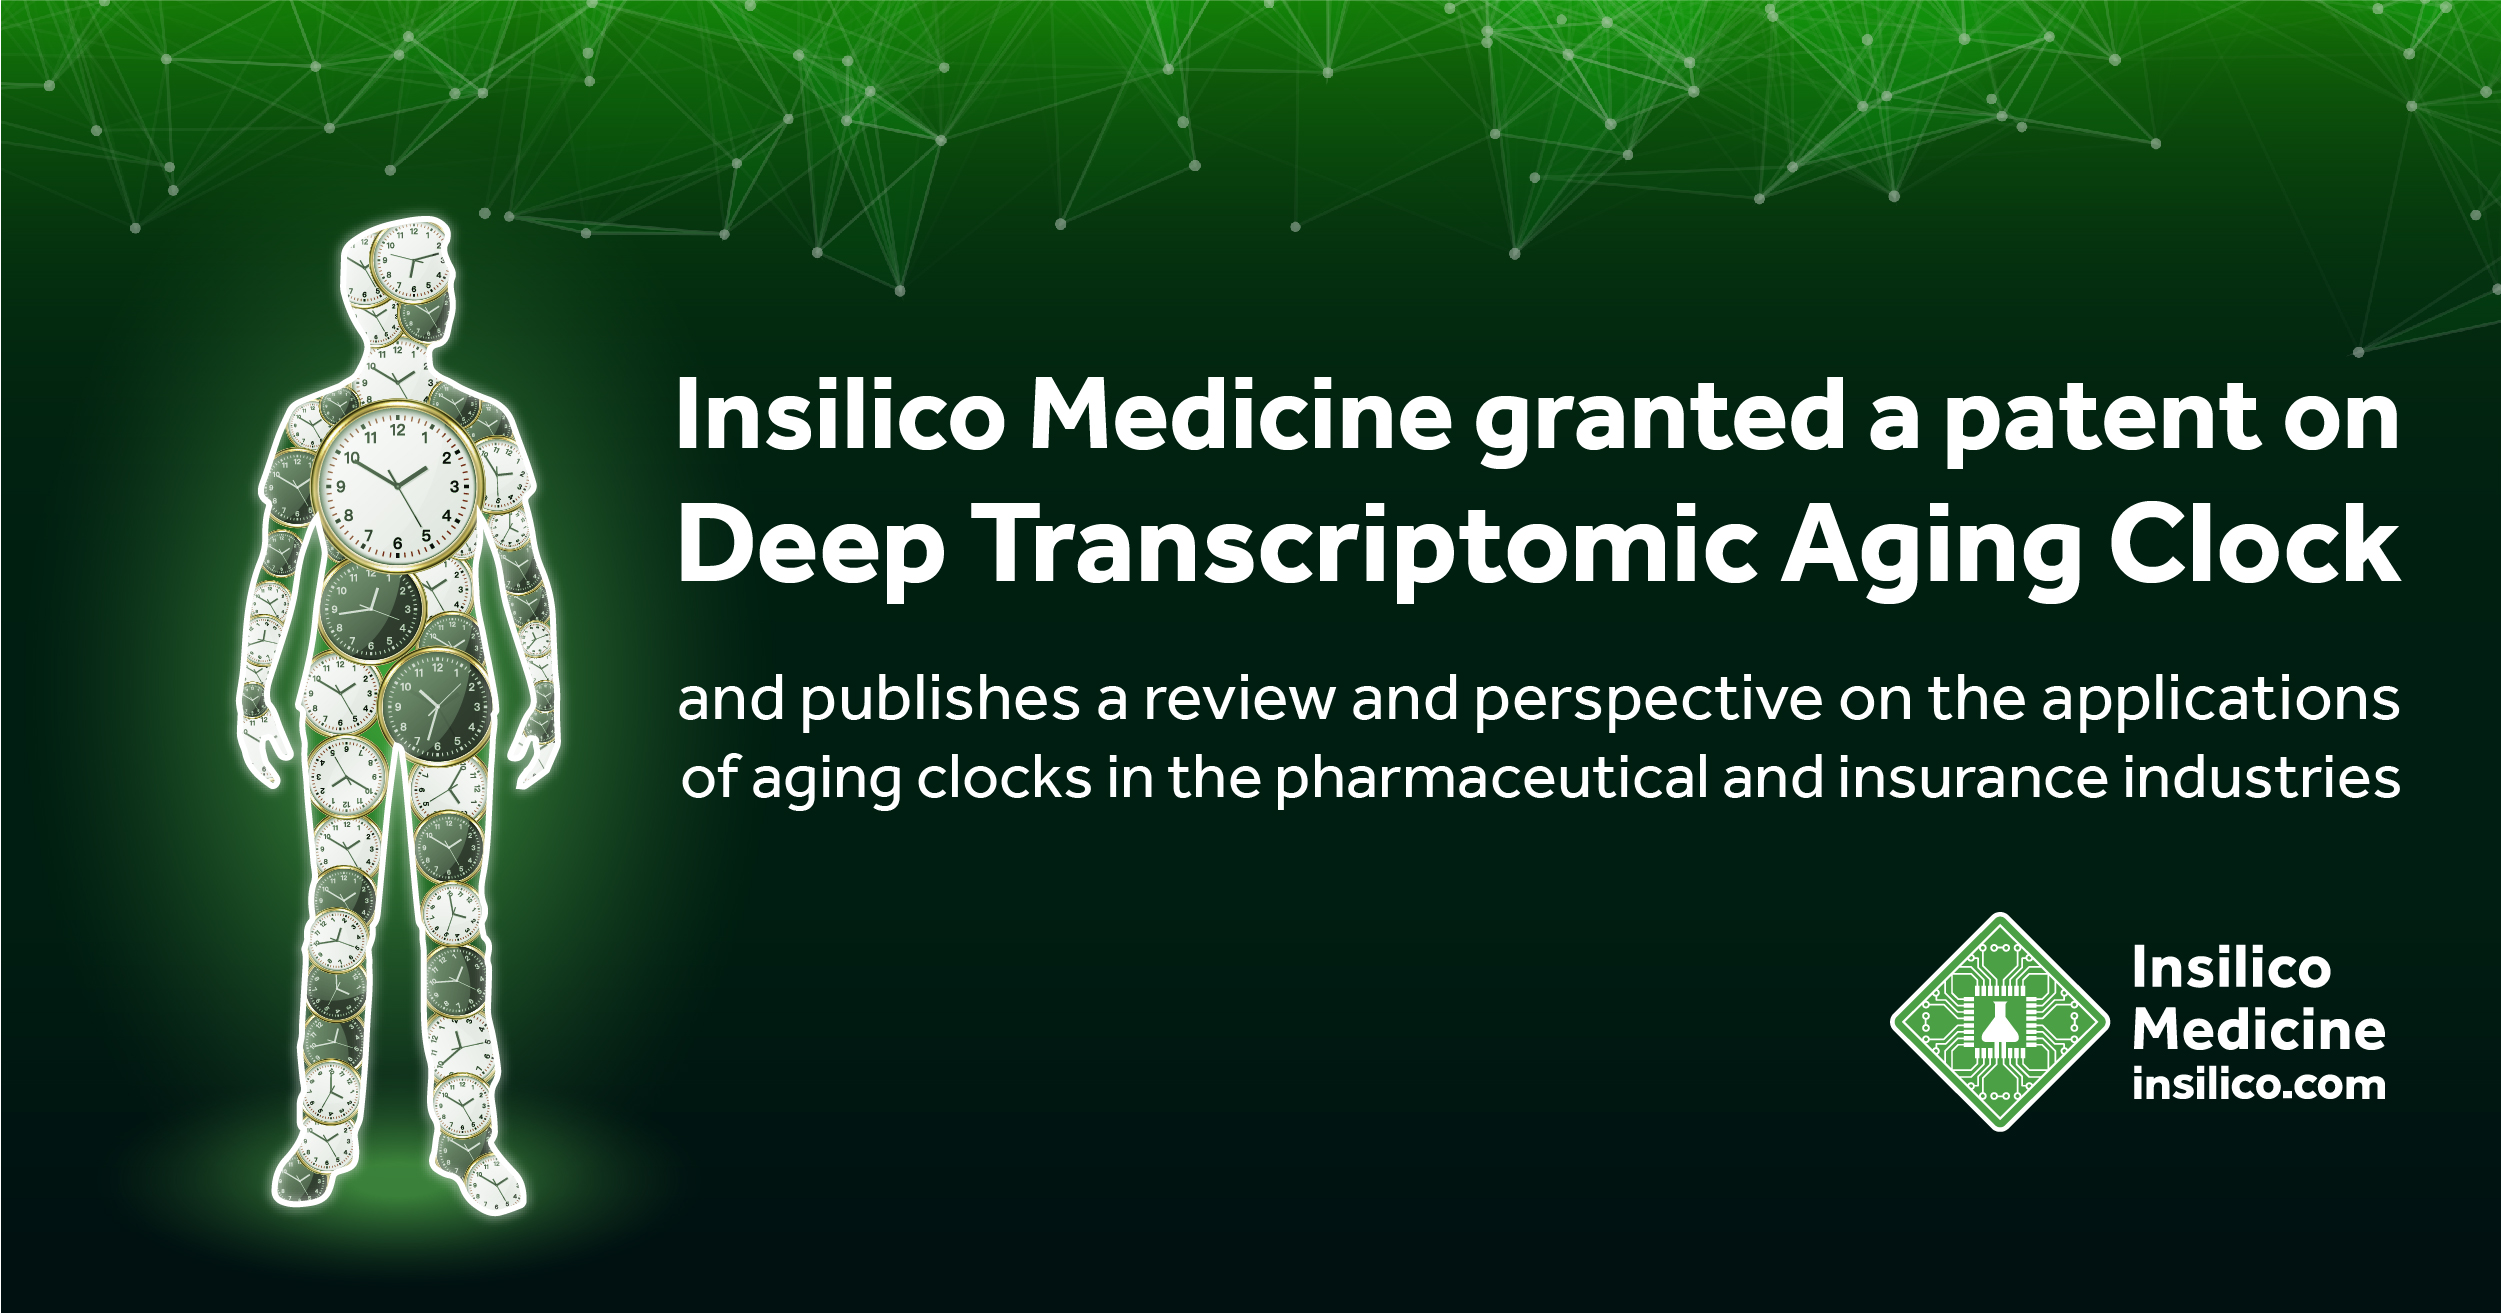 Insilico Medicine 发表“衰老时钟”论文及关键专利 | 36氪新药新疗法